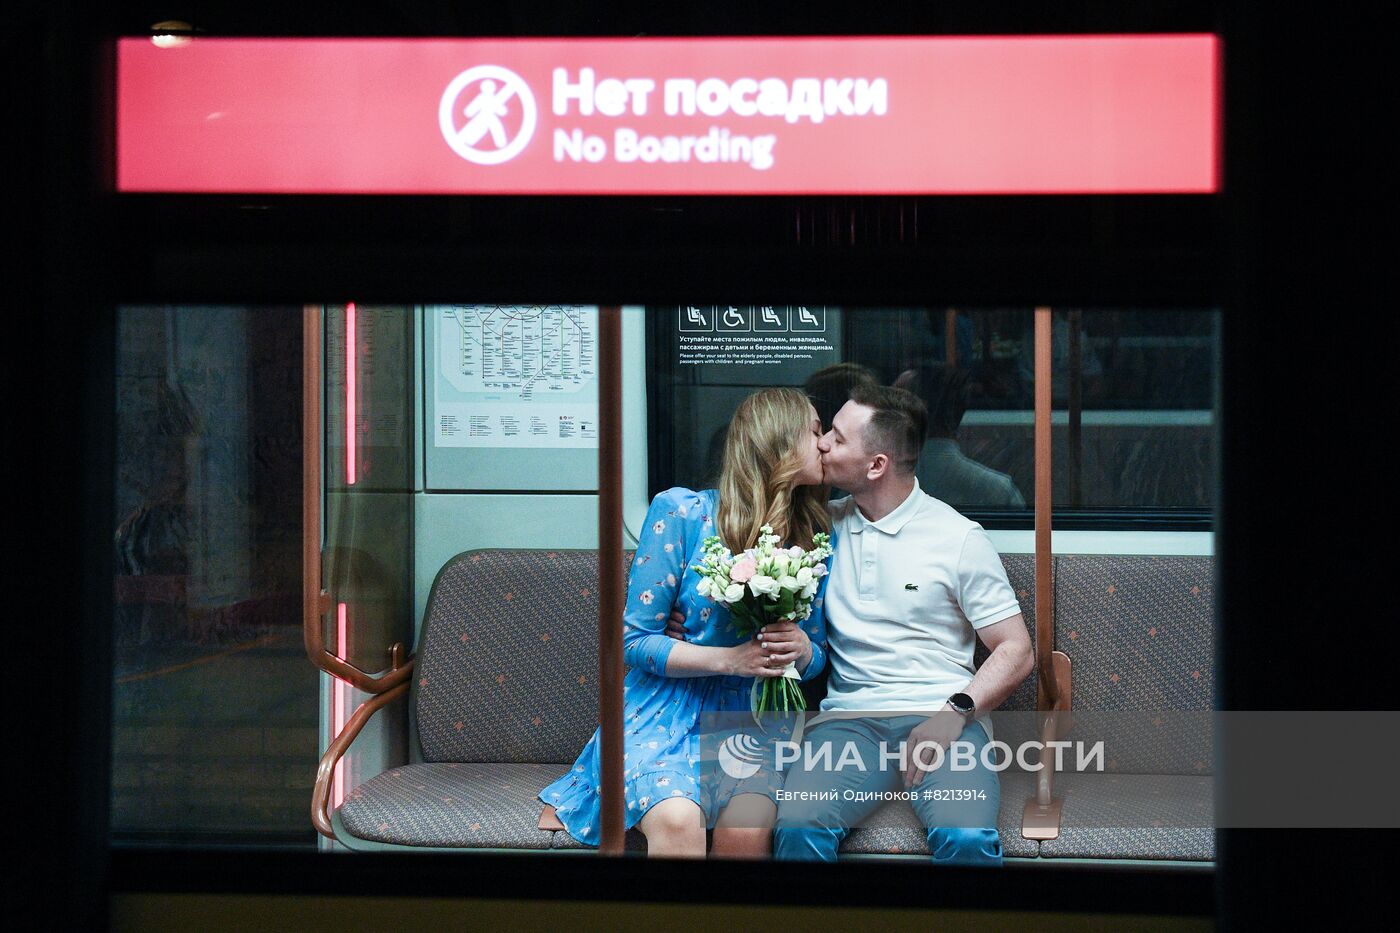 Церемонии заключения брака в День России